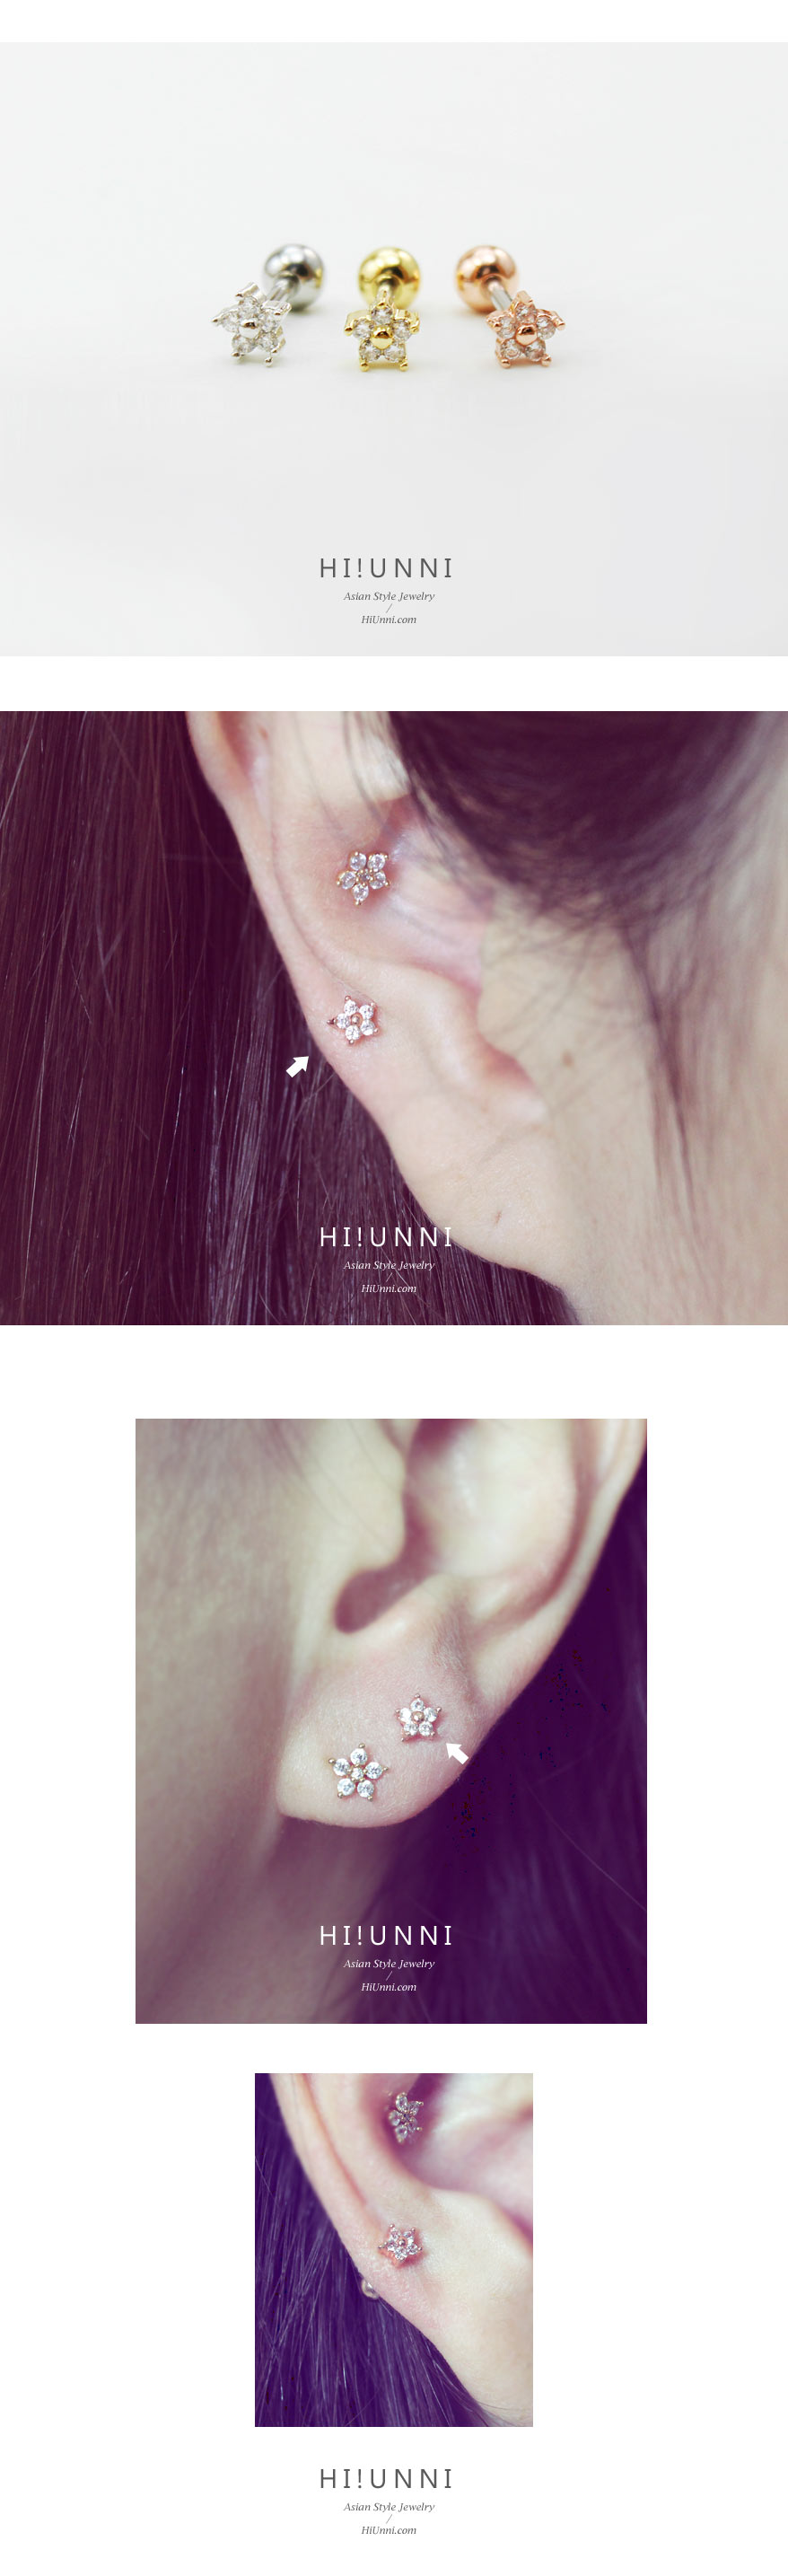 jewelry_earrings_stud_cartilage_piercing_16g_barbell_316l_cz_flower_5